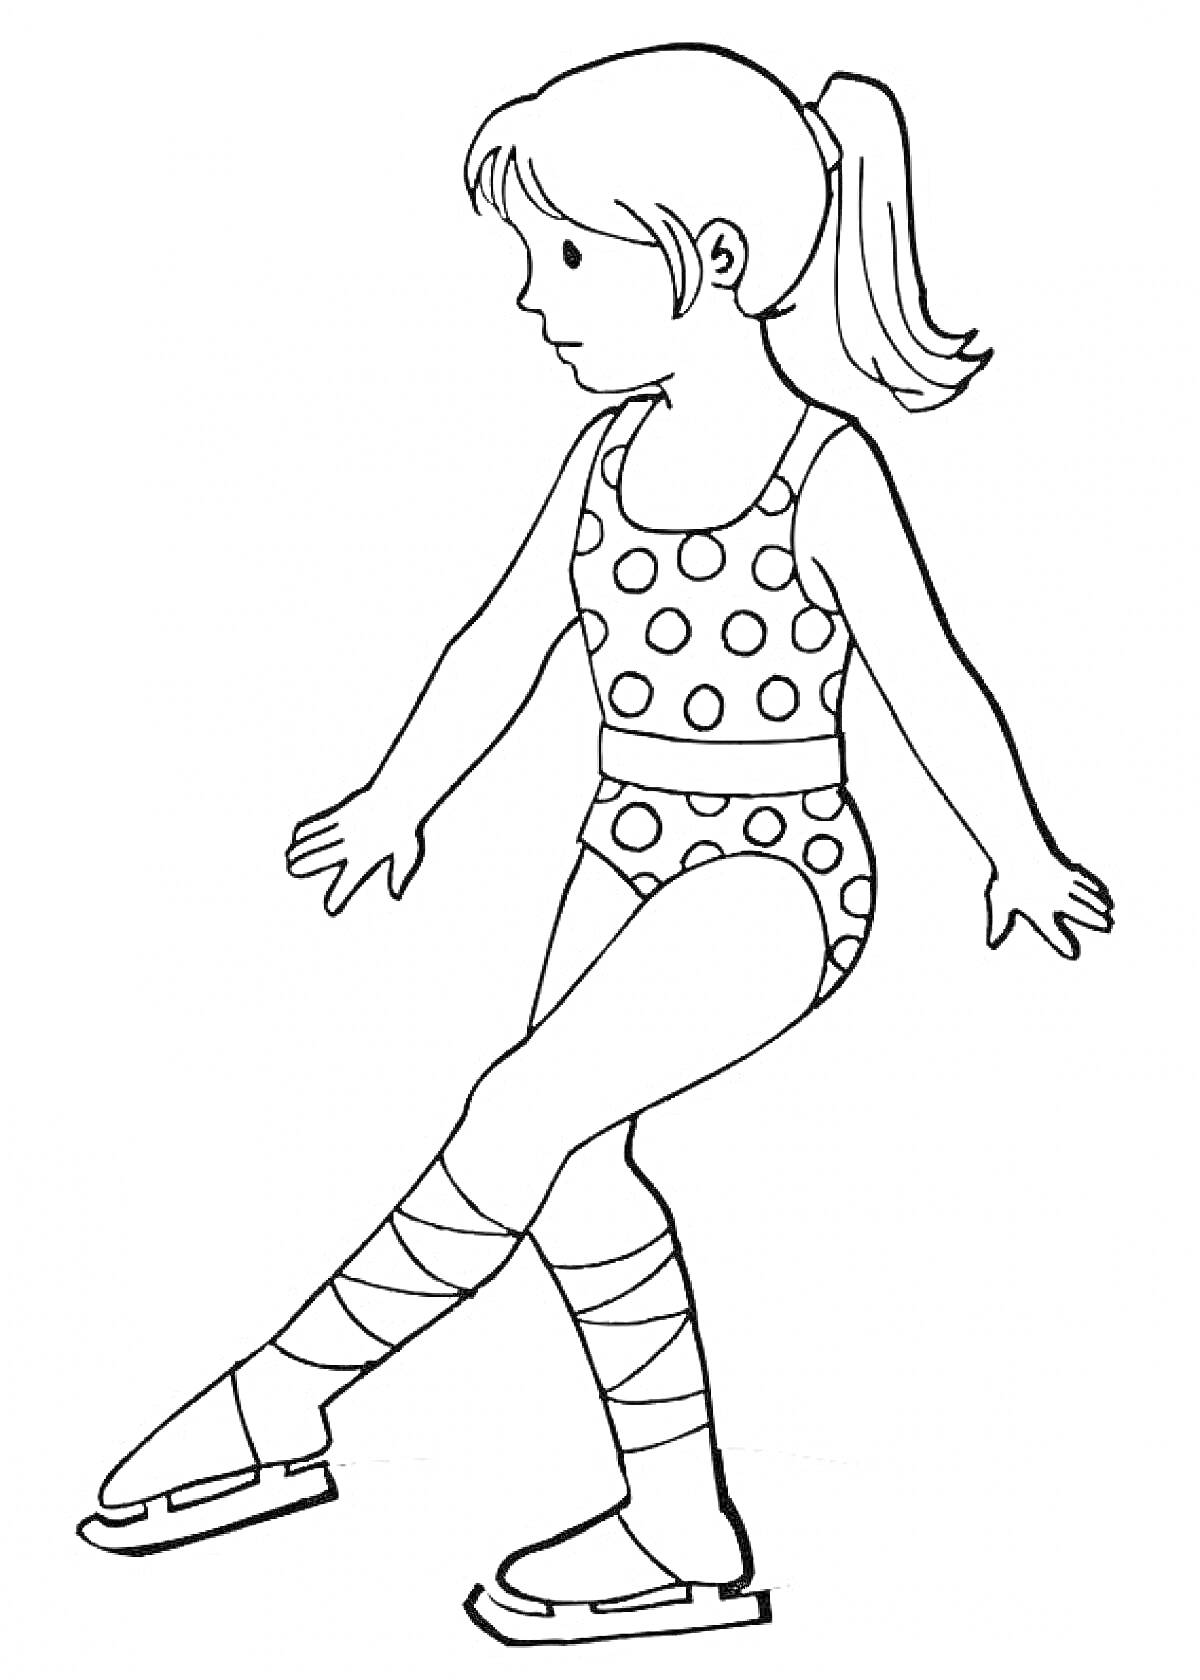 Девочка-фигуристка, в горошковом купальнике, на коньках, с хвостиком